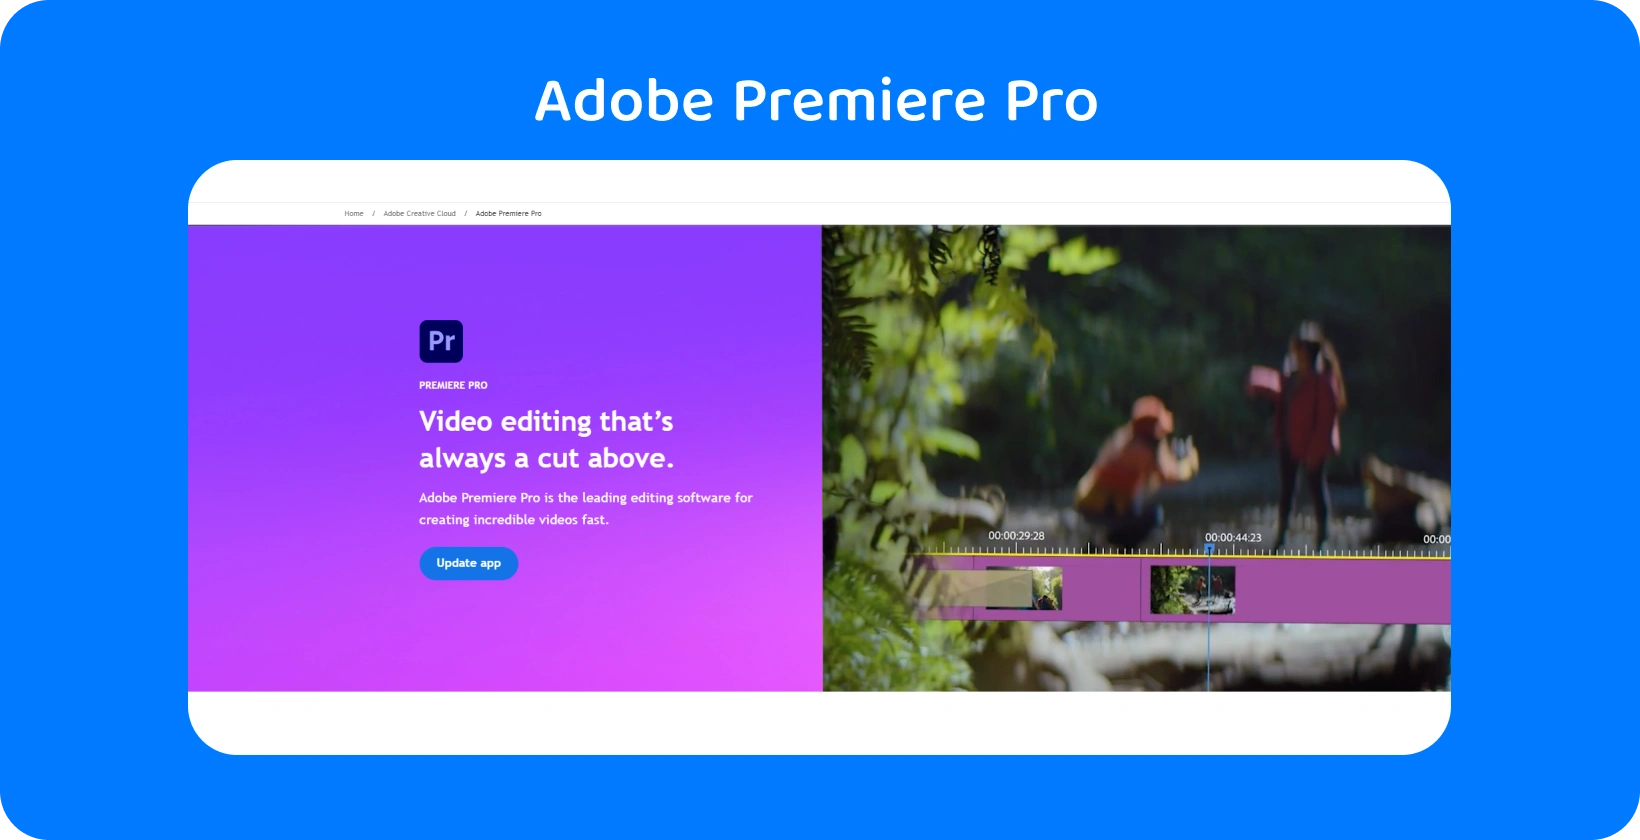 Adobe Premiere Pro käyttöliittymä, joka näyttää edistyneet videonmuokkausominaisuudet, ihanteellinen nopeisiin ja tarkkoihin muokkauksiin.